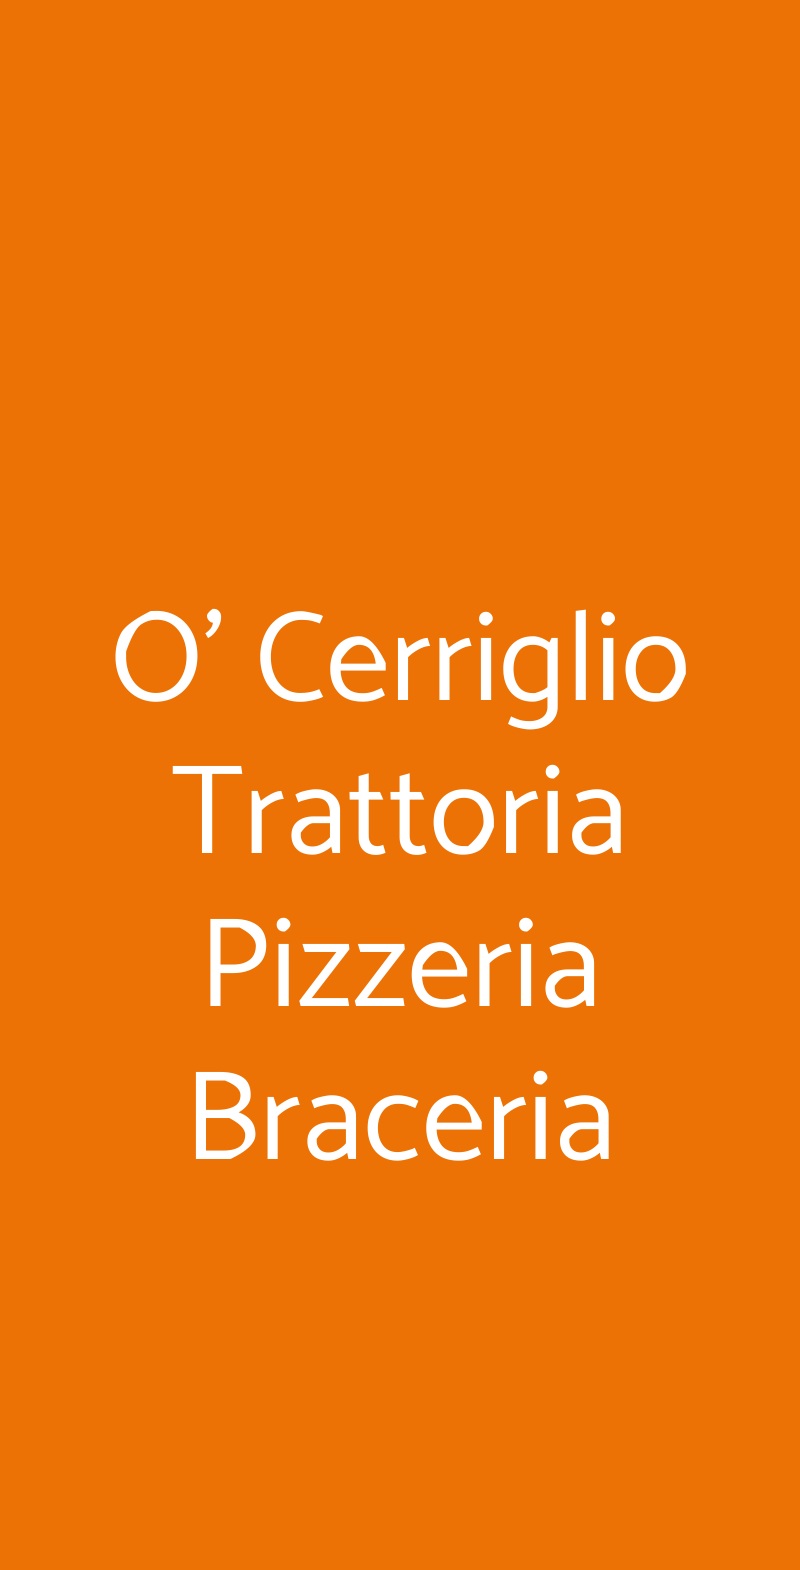 O' Cerriglio Trattoria Pizzeria Braceria Napoli menù 1 pagina